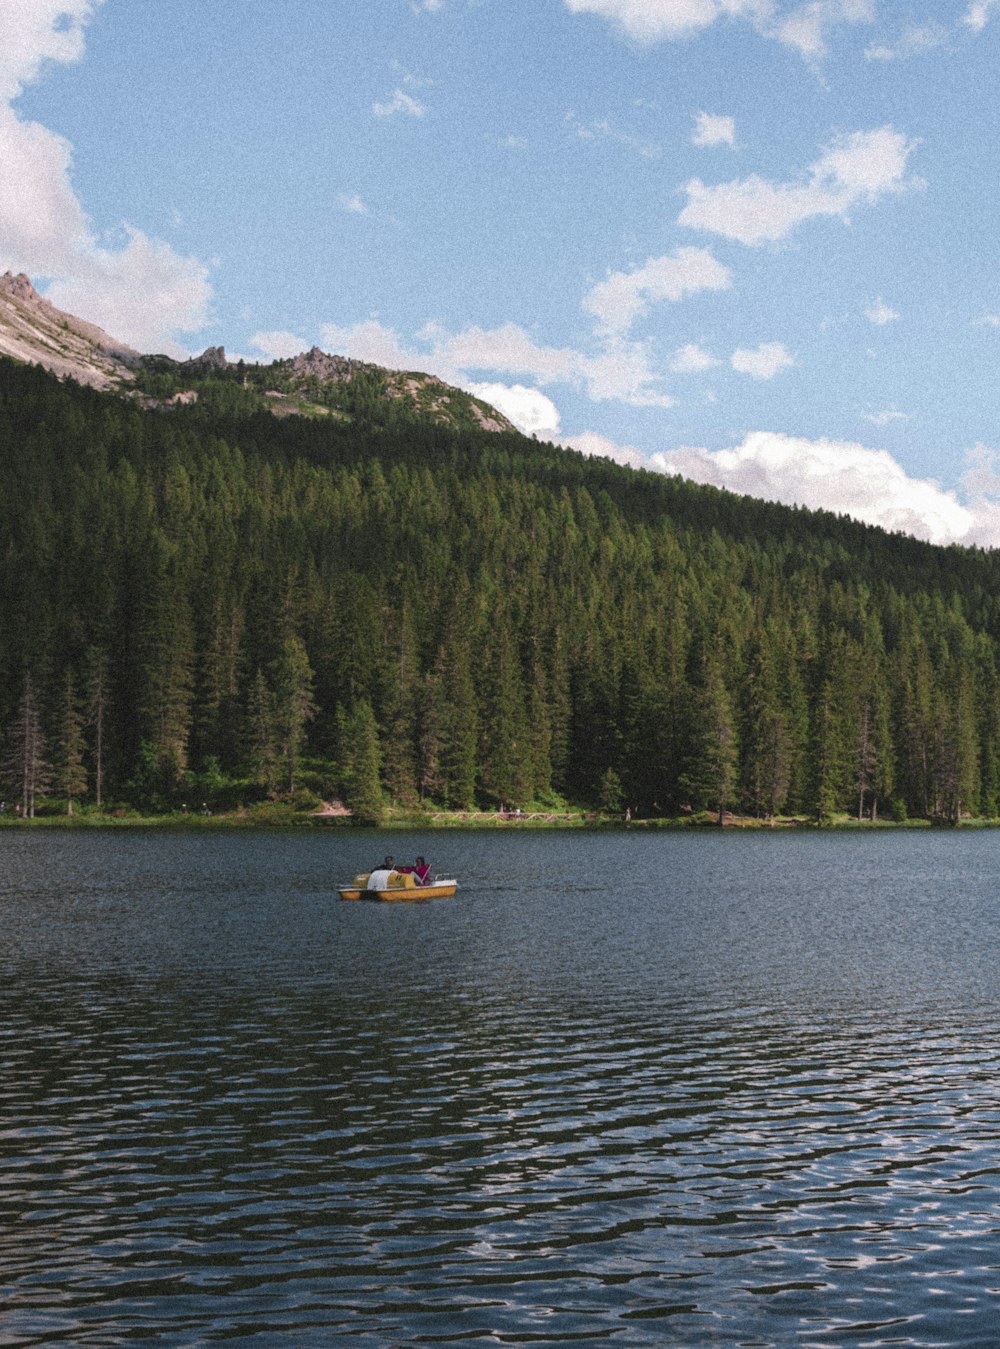 Persona che cavalca sul kayak giallo sul lago vicino agli alberi verdi e alla montagna durante il giorno